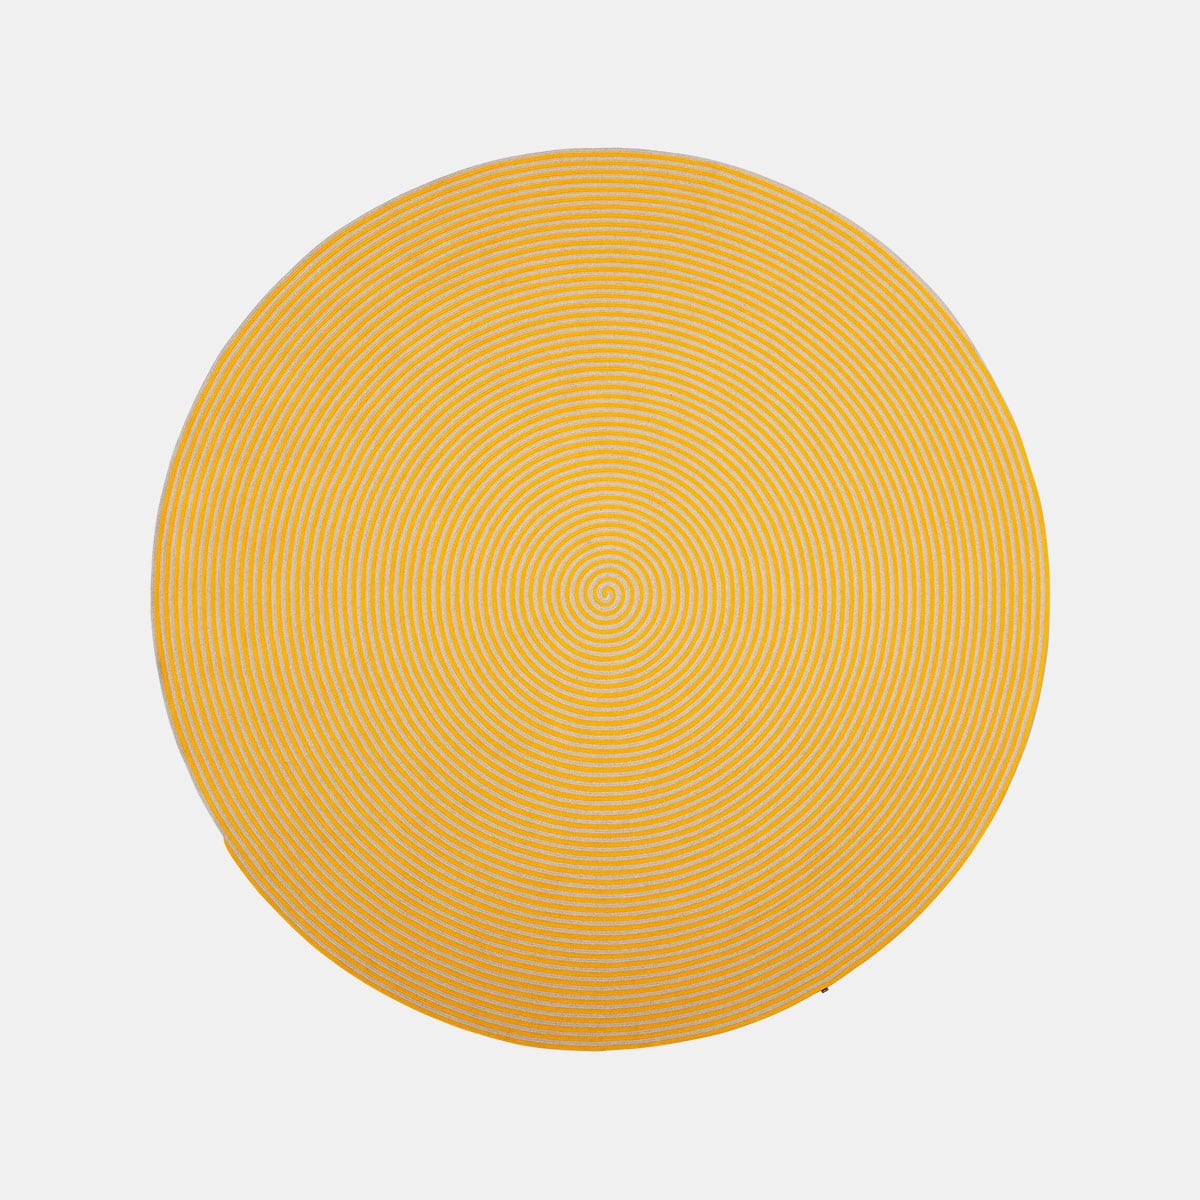 cassina-soleil-carpet-polypropyleen-geel-beige-001shop